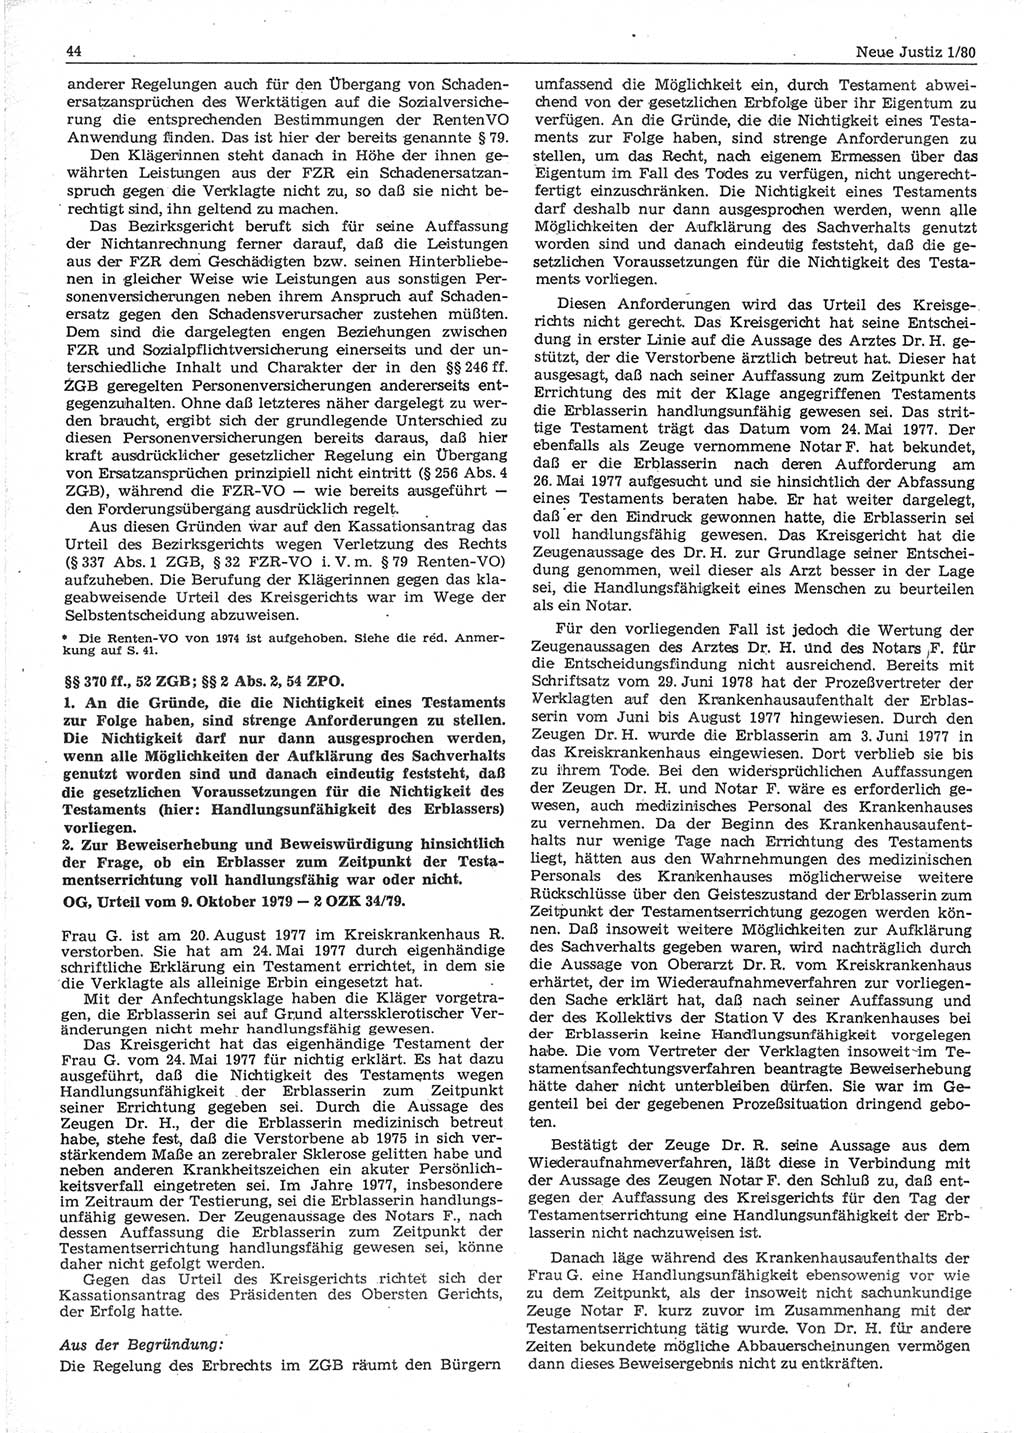 Neue Justiz (NJ), Zeitschrift für sozialistisches Recht und Gesetzlichkeit [Deutsche Demokratische Republik (DDR)], 34. Jahrgang 1980, Seite 44 (NJ DDR 1980, S. 44)